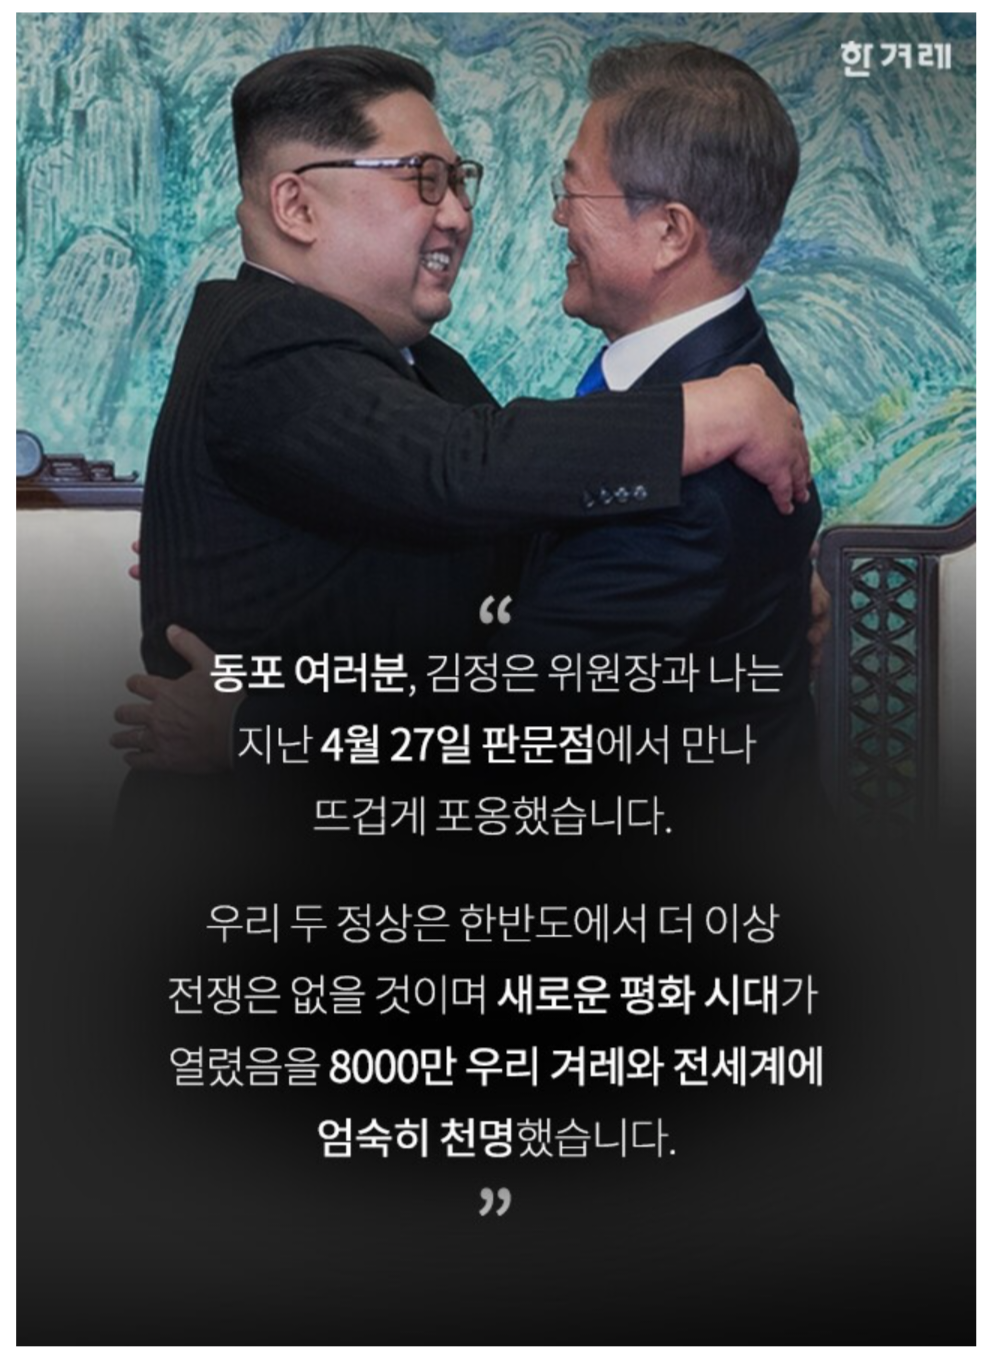 2018년 9월 19일,문재인 평양연설04.png